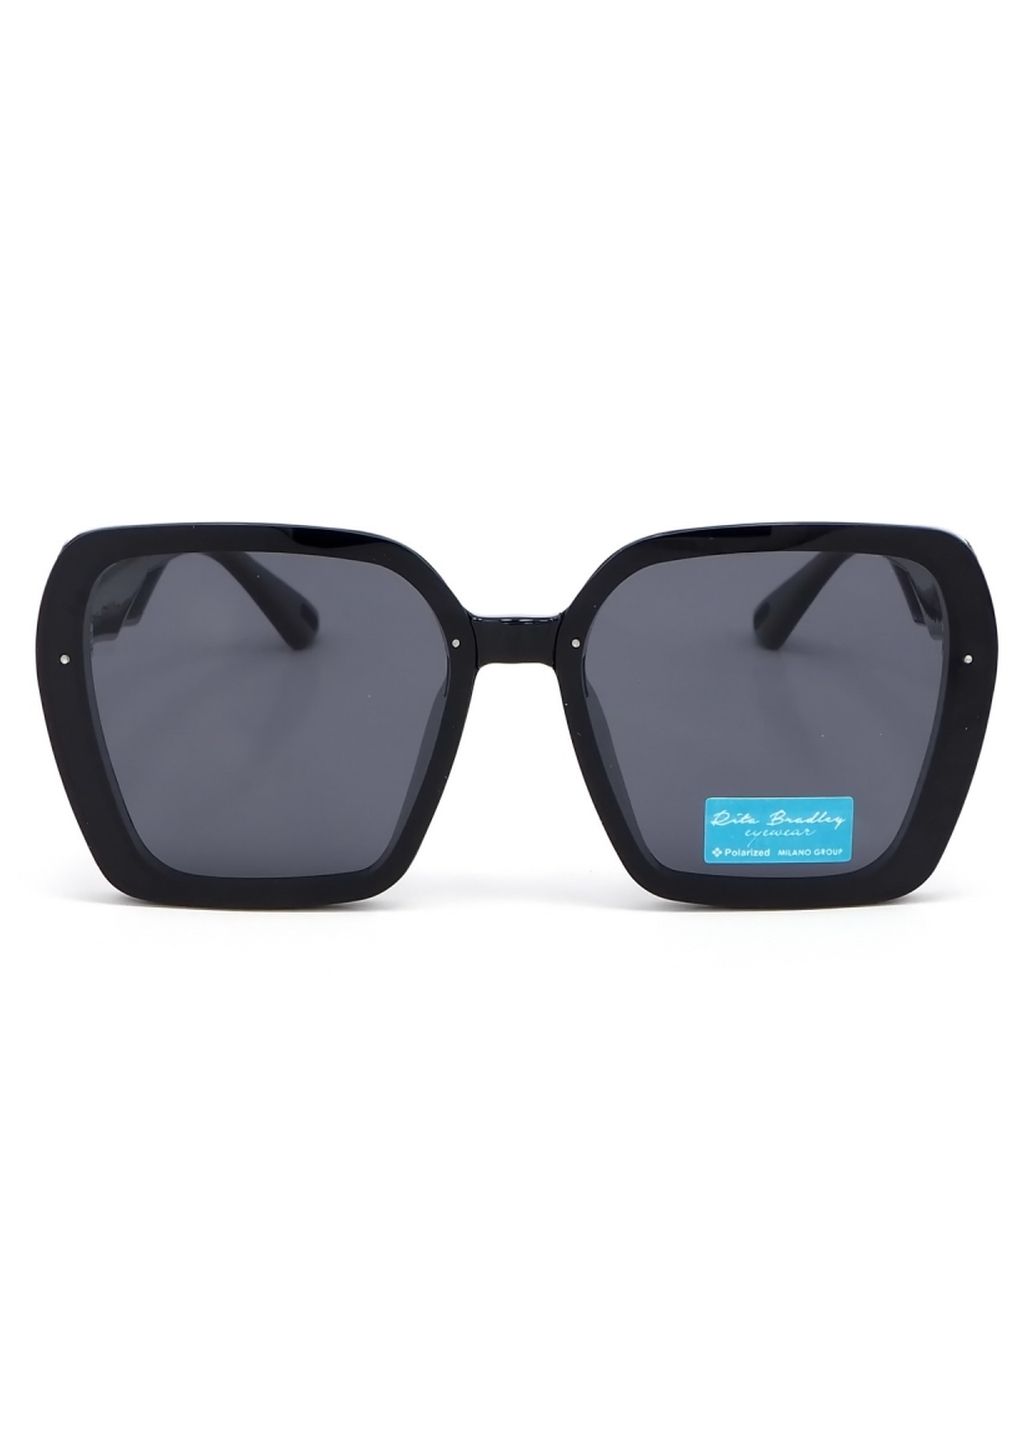 Купить Женские солнцезащитные очки Rita Bradley с поляризацией RB730 112072 в интернет-магазине